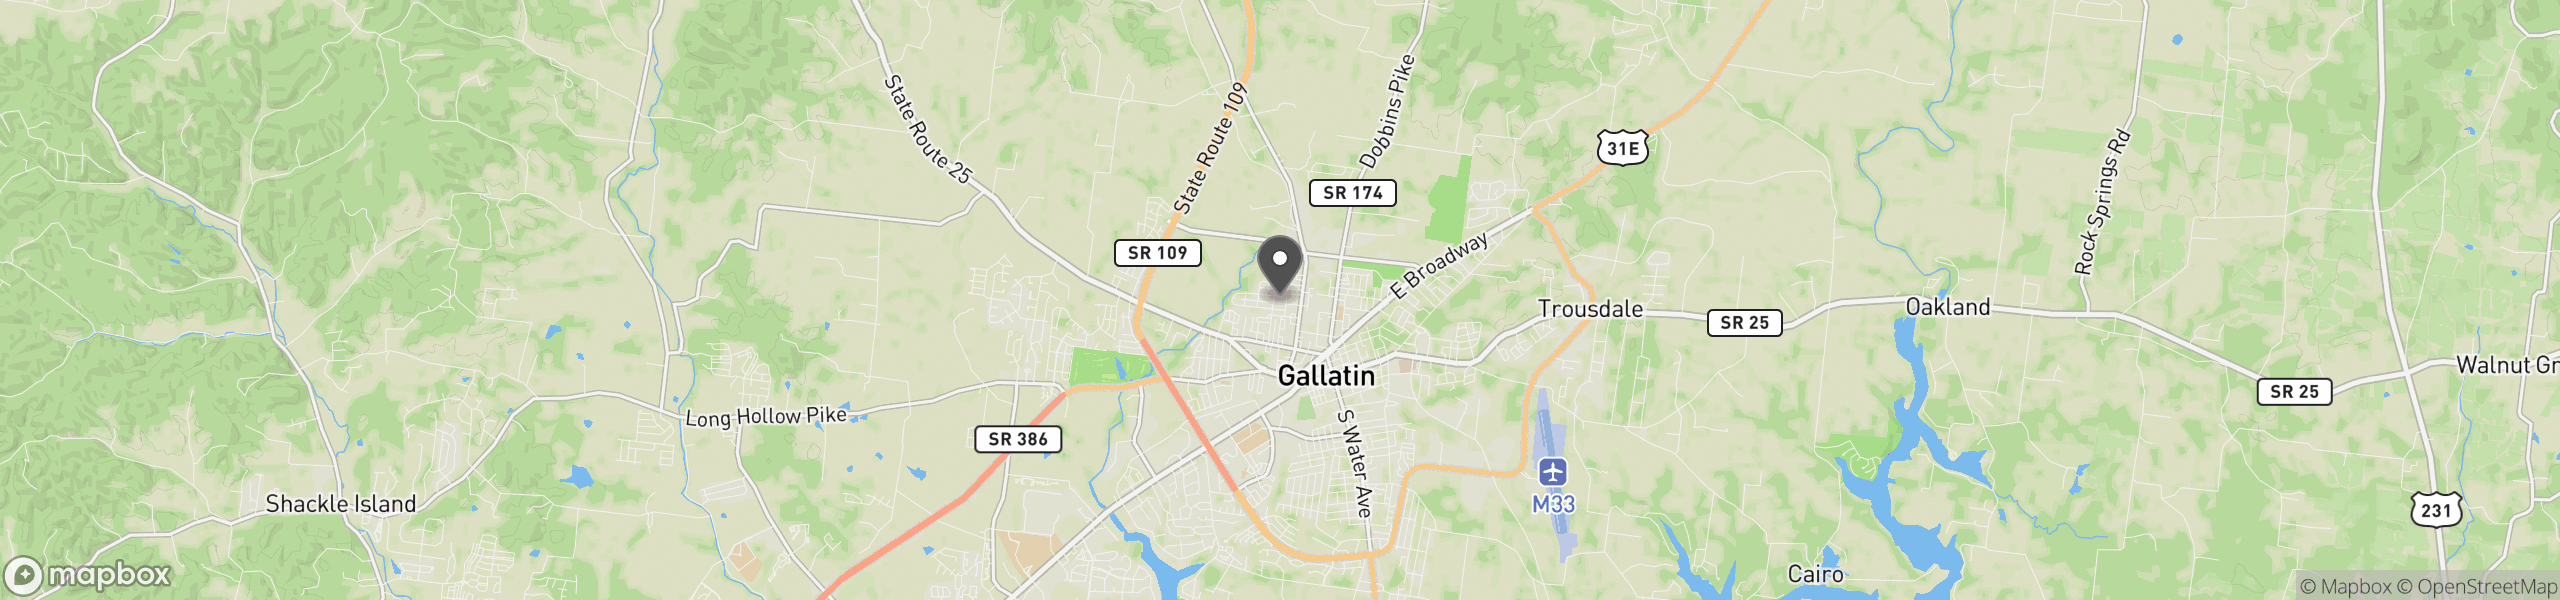 Gallatin, TN 37066